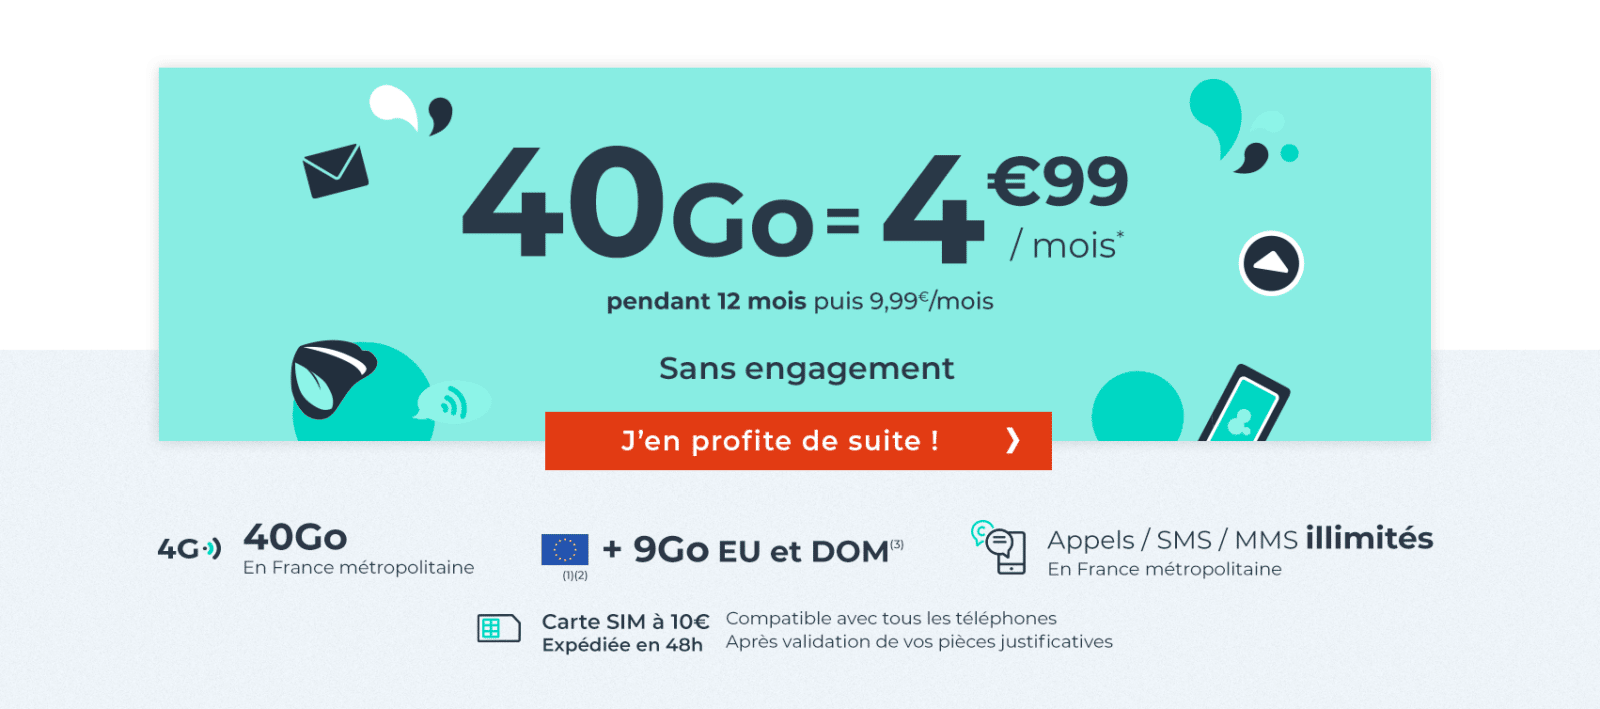 forfait-mobile-5-euros-par-mois-40-Go-bon-plan